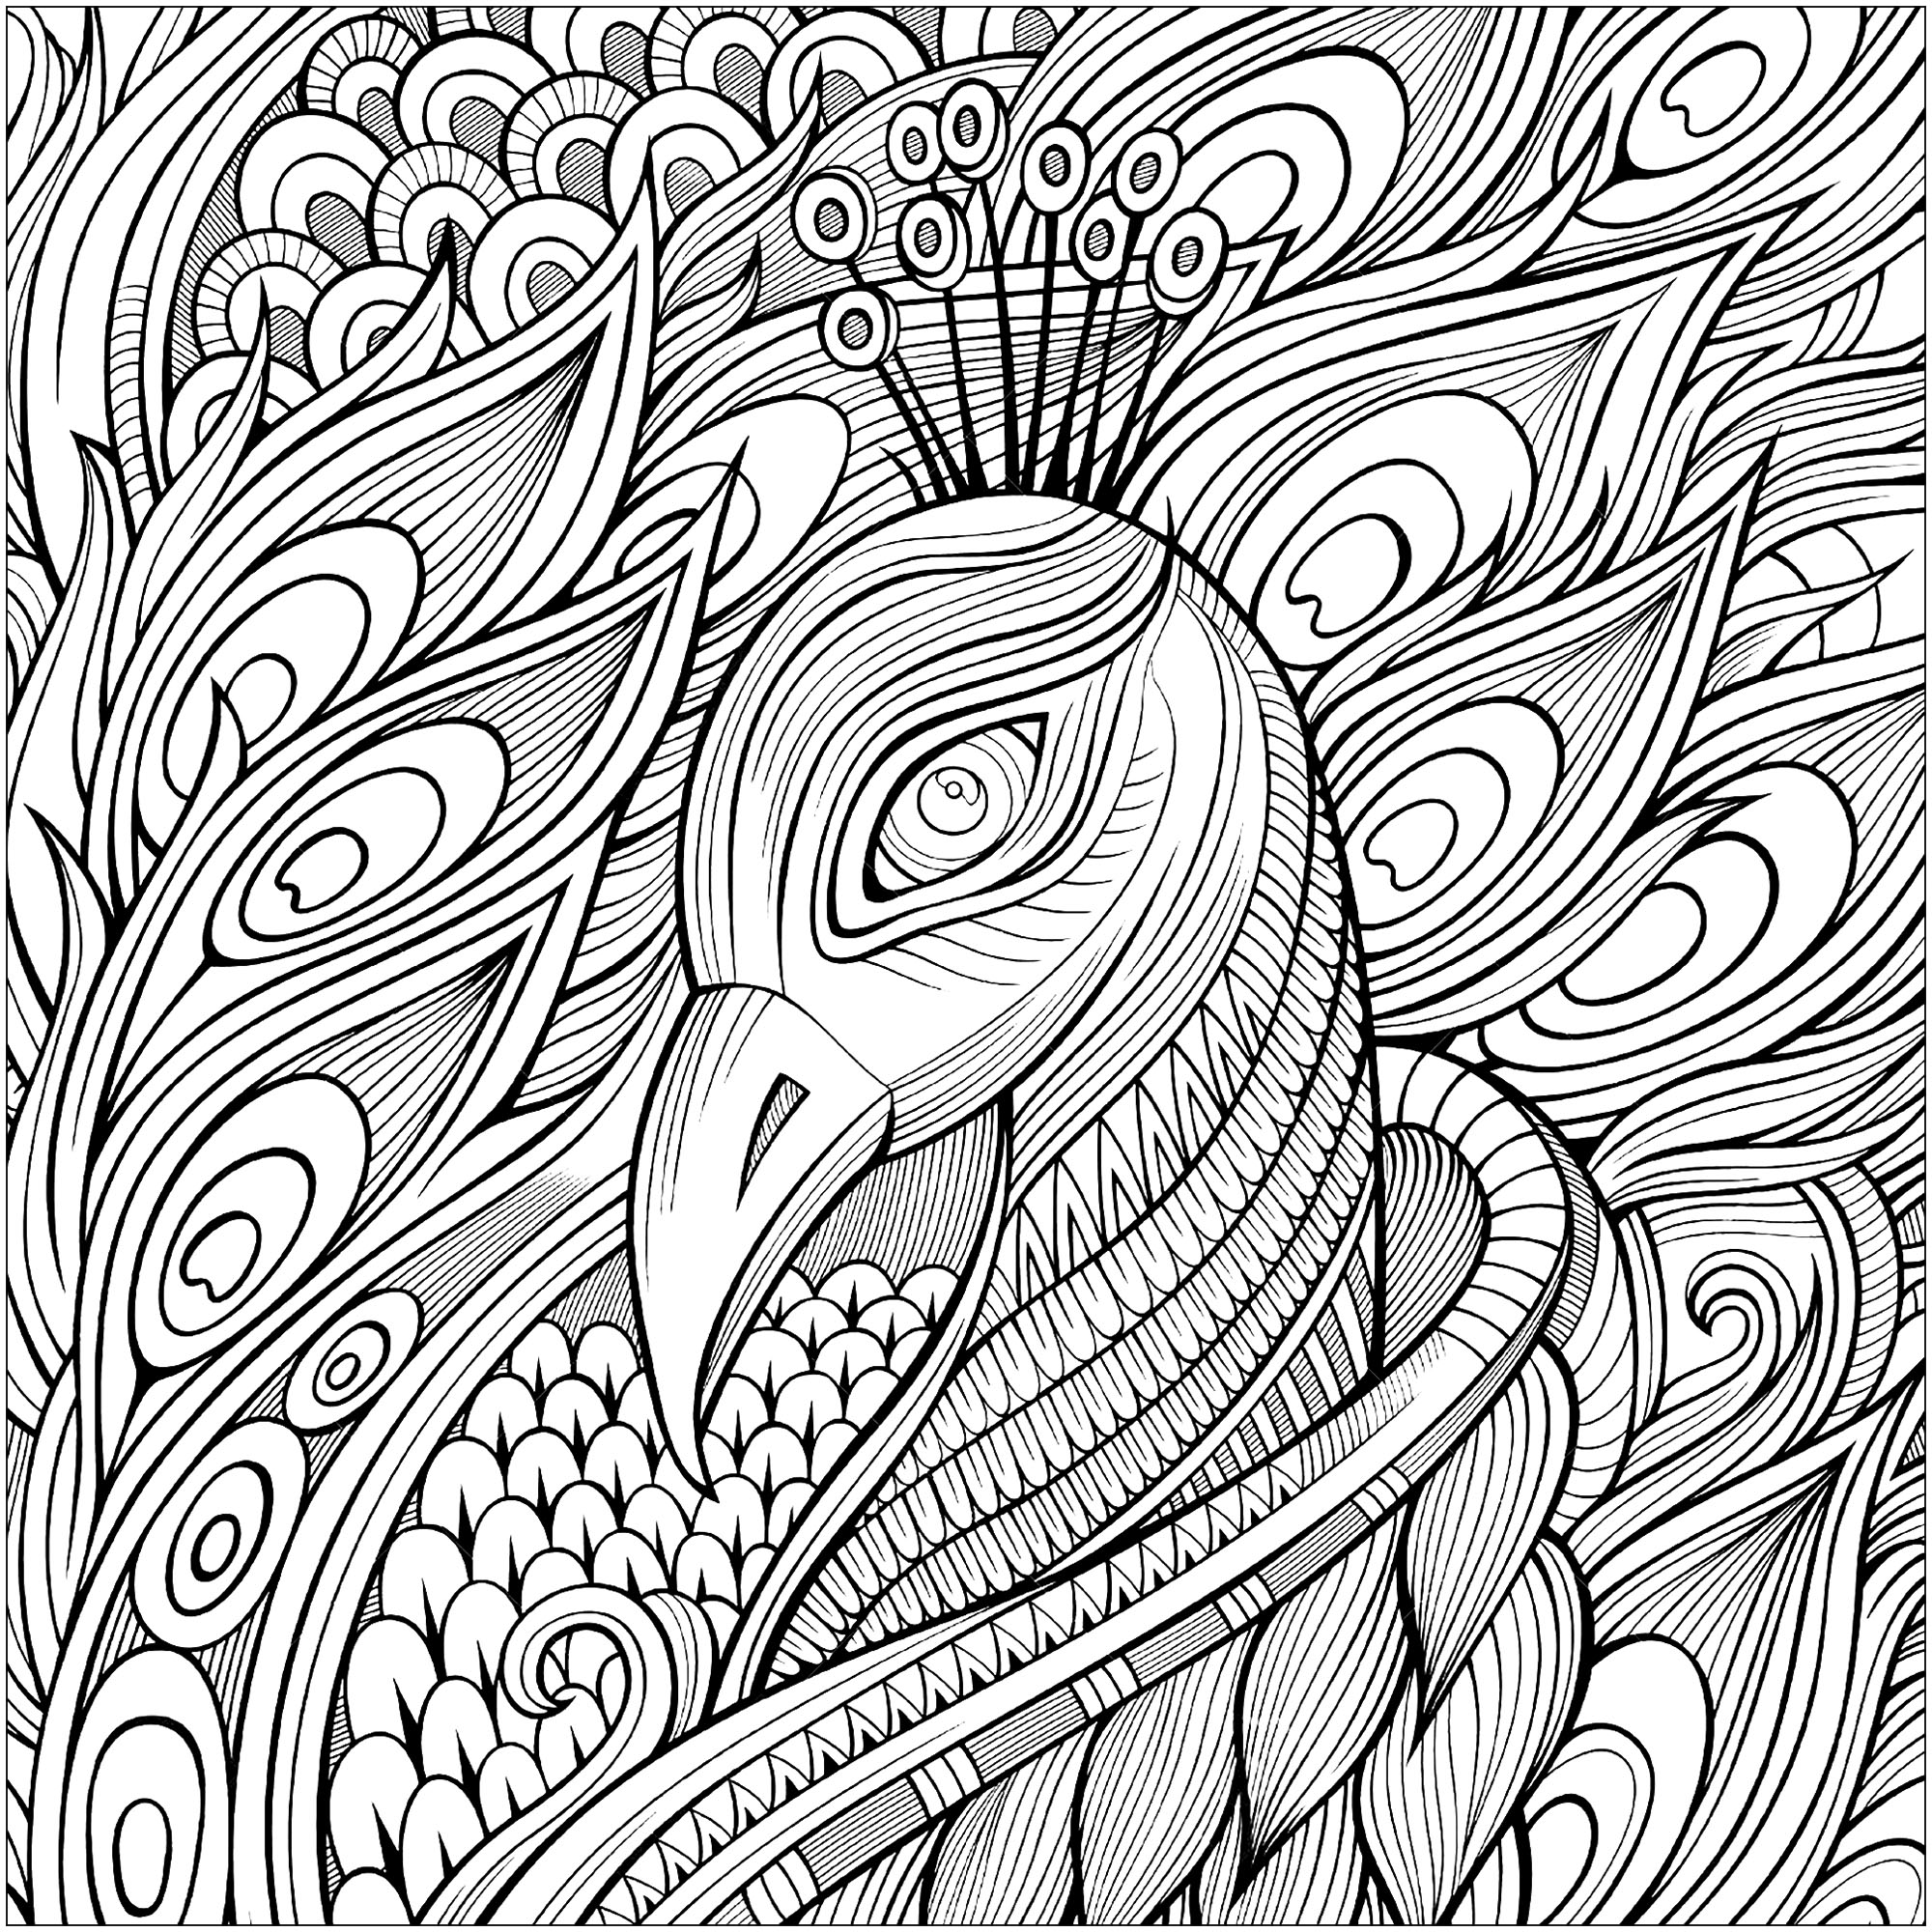 Desenhos para colorir representando a cabeça de um pavão e as suas magníficas penas, Fonte : 123rf   Artista : Olga Kostenko